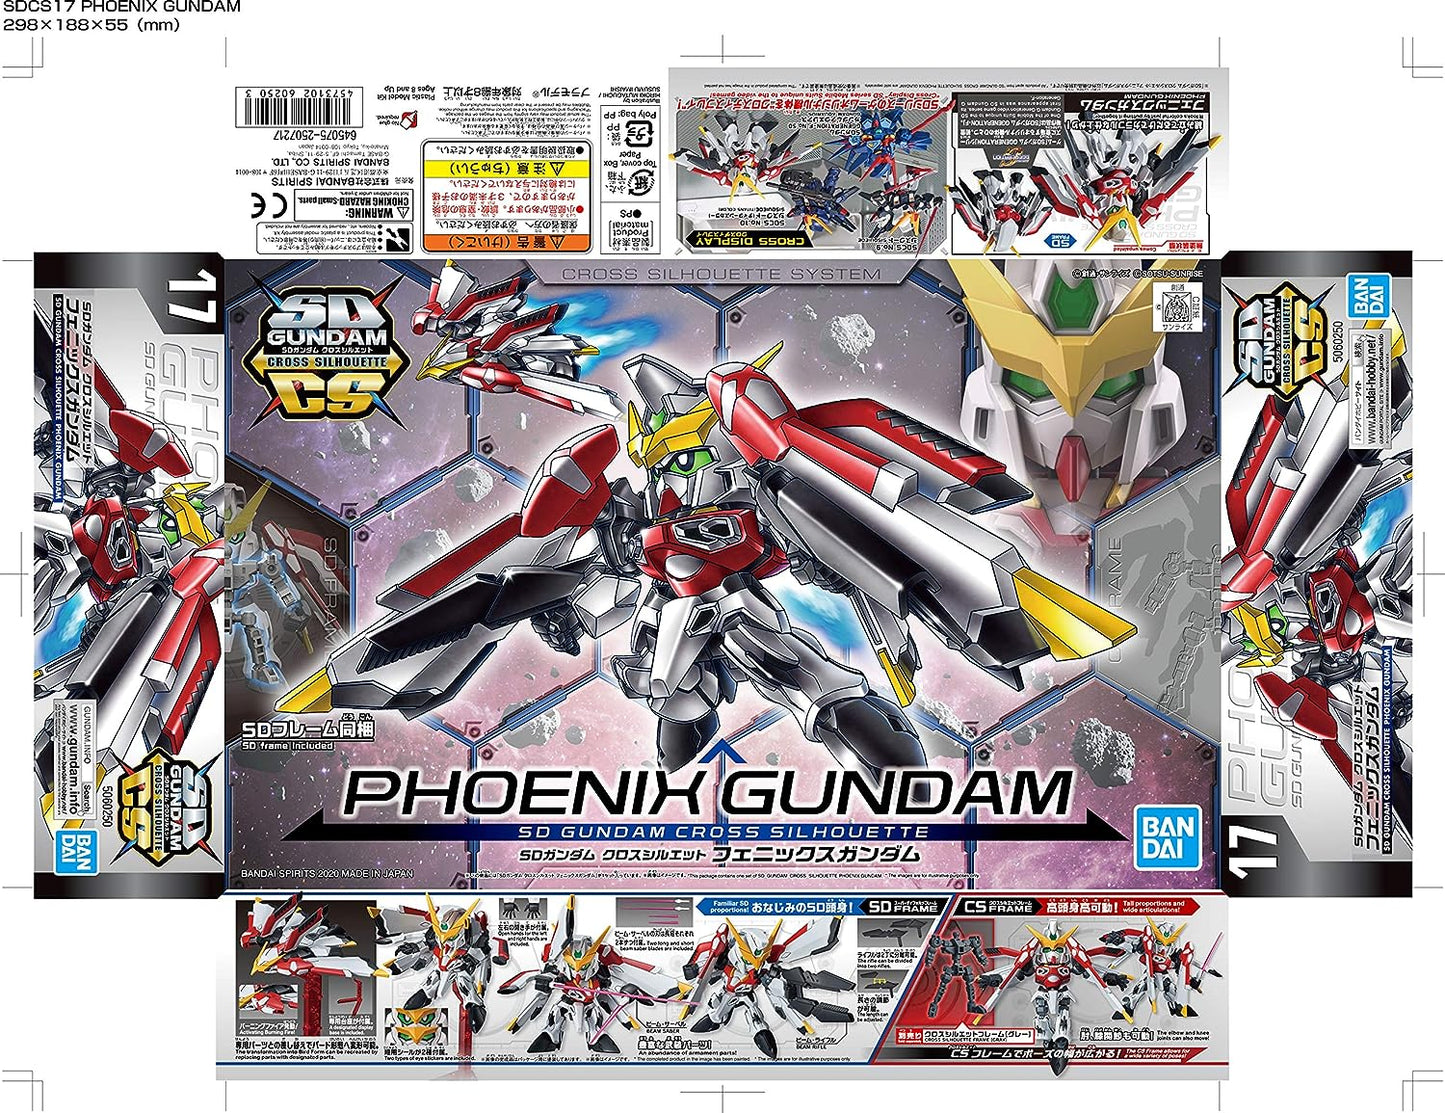 SD Gundam Cross Silhouette SDCS "SD Gundam G Generation" Phoenix Gundam | animota